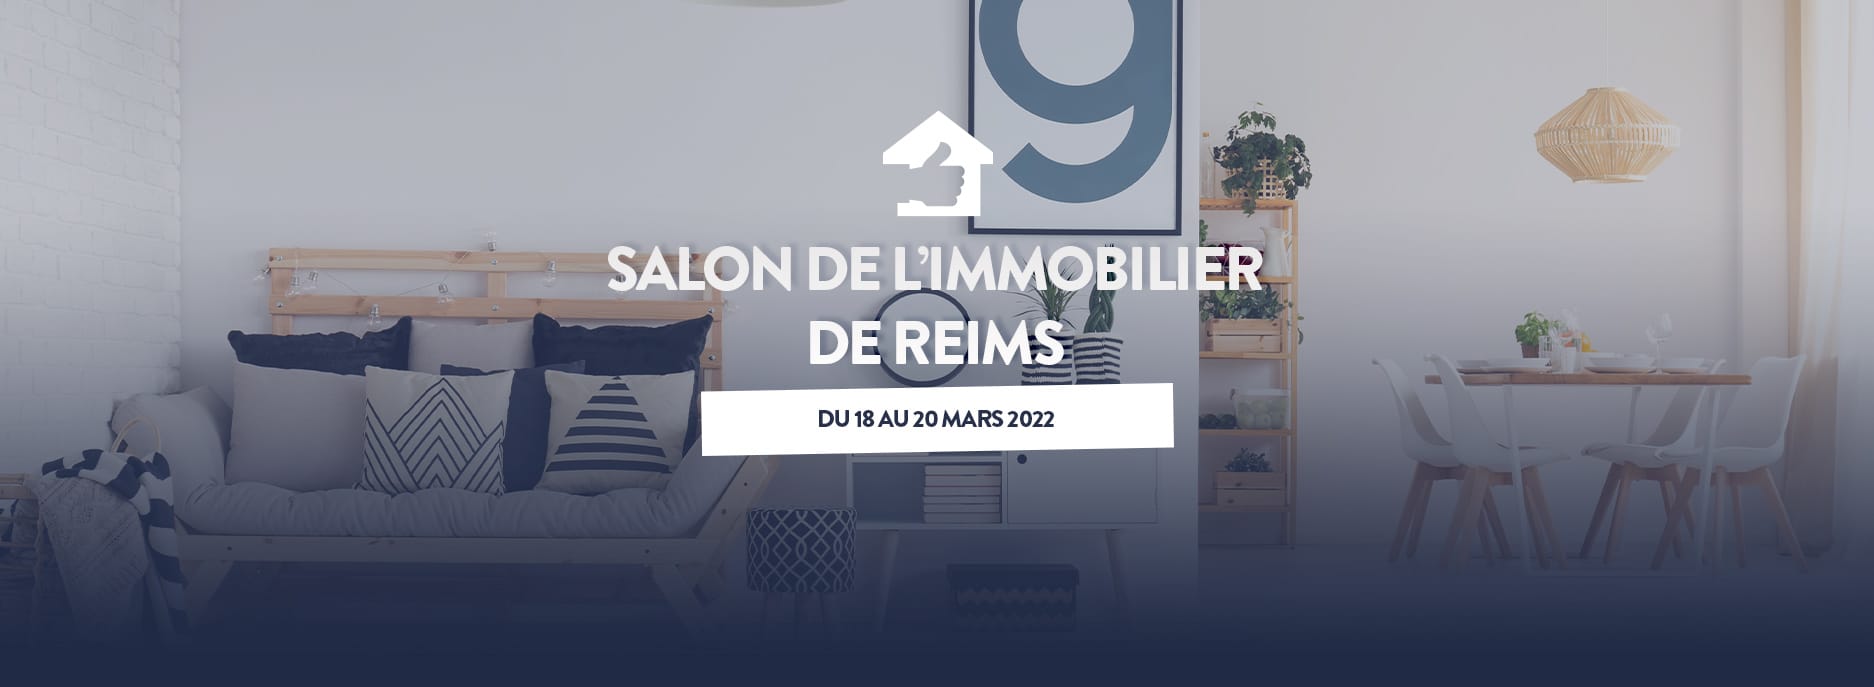 Salon de l'Immobilier de Reims du 18 au 20 mars